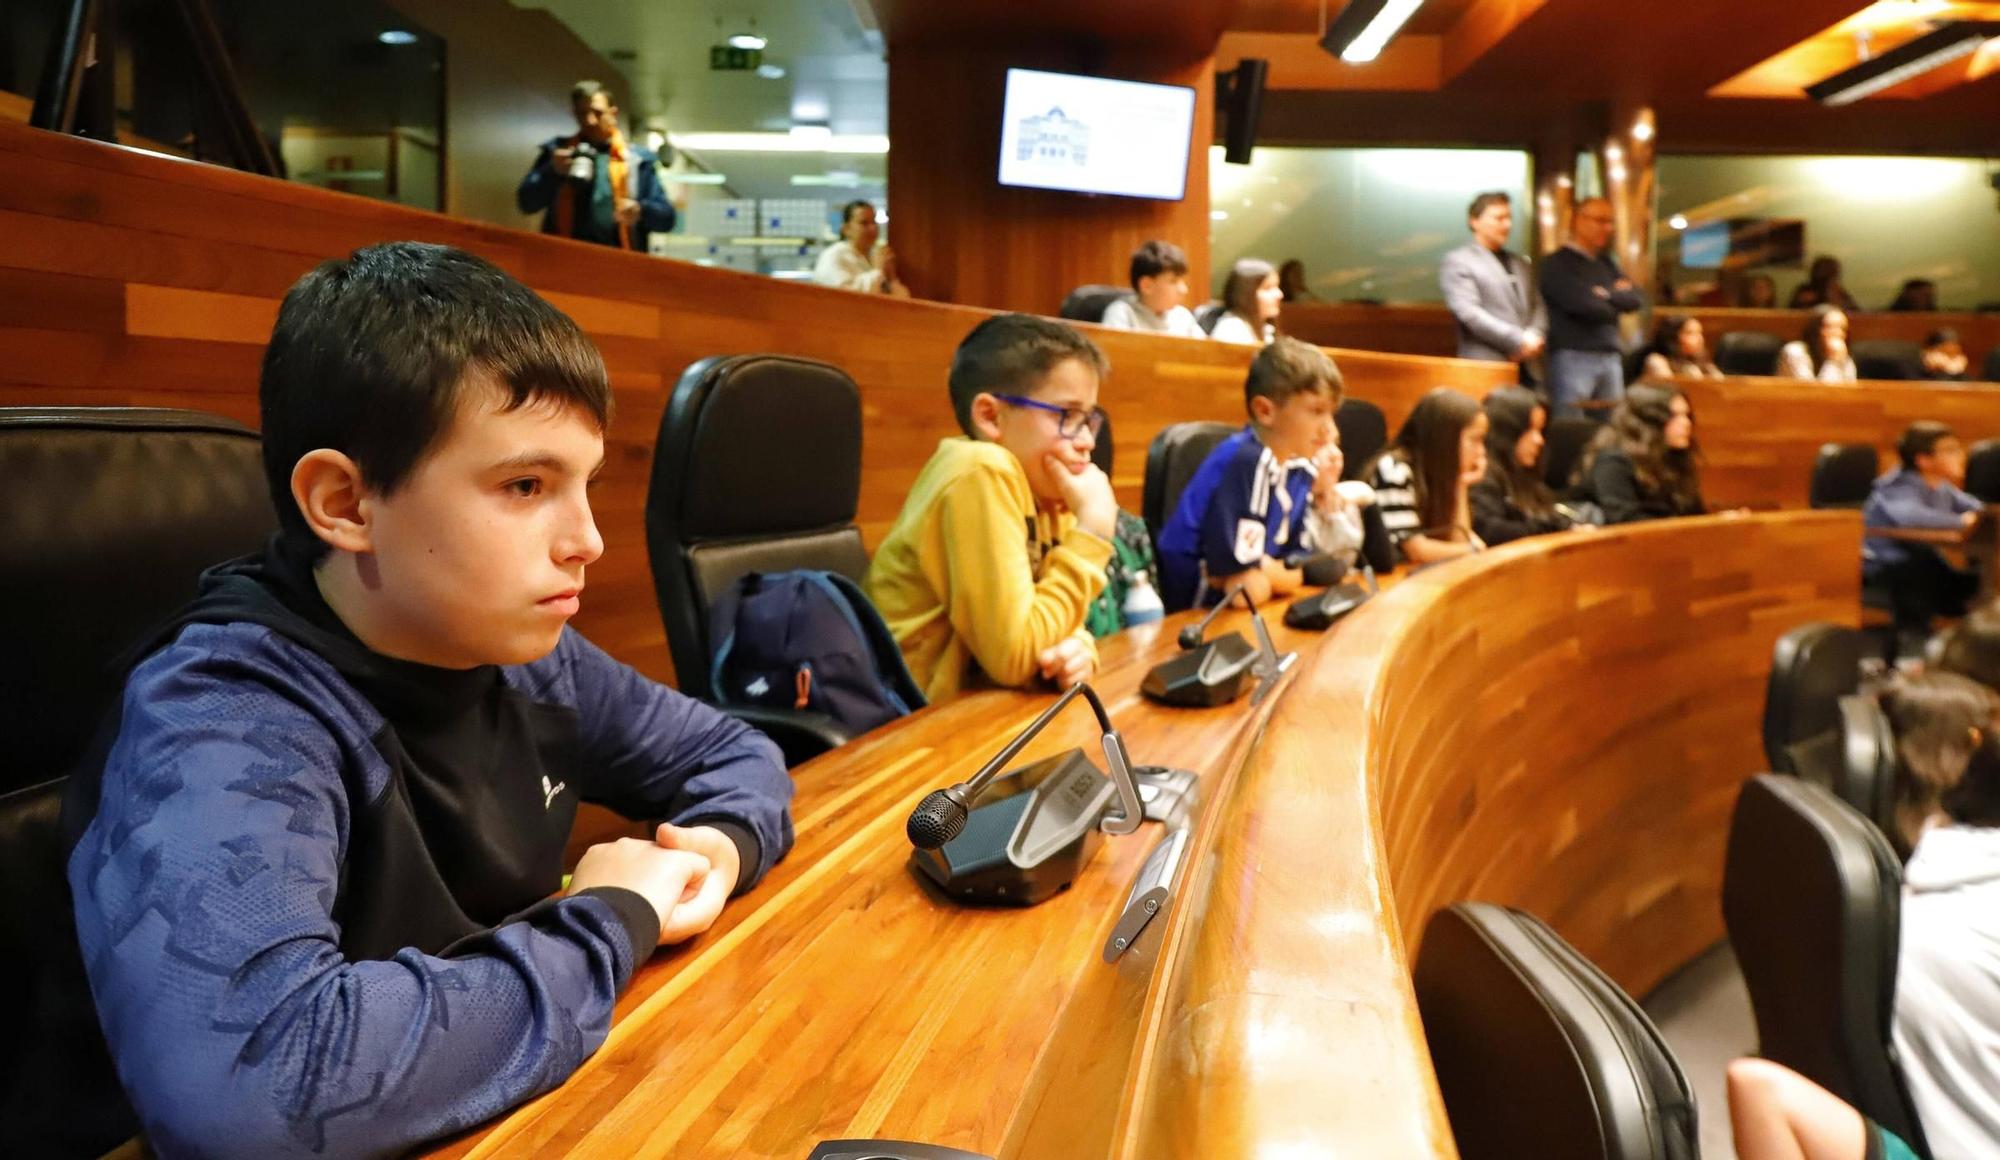 En imágenes: Pleno infantil con colegios del occidente asturiano